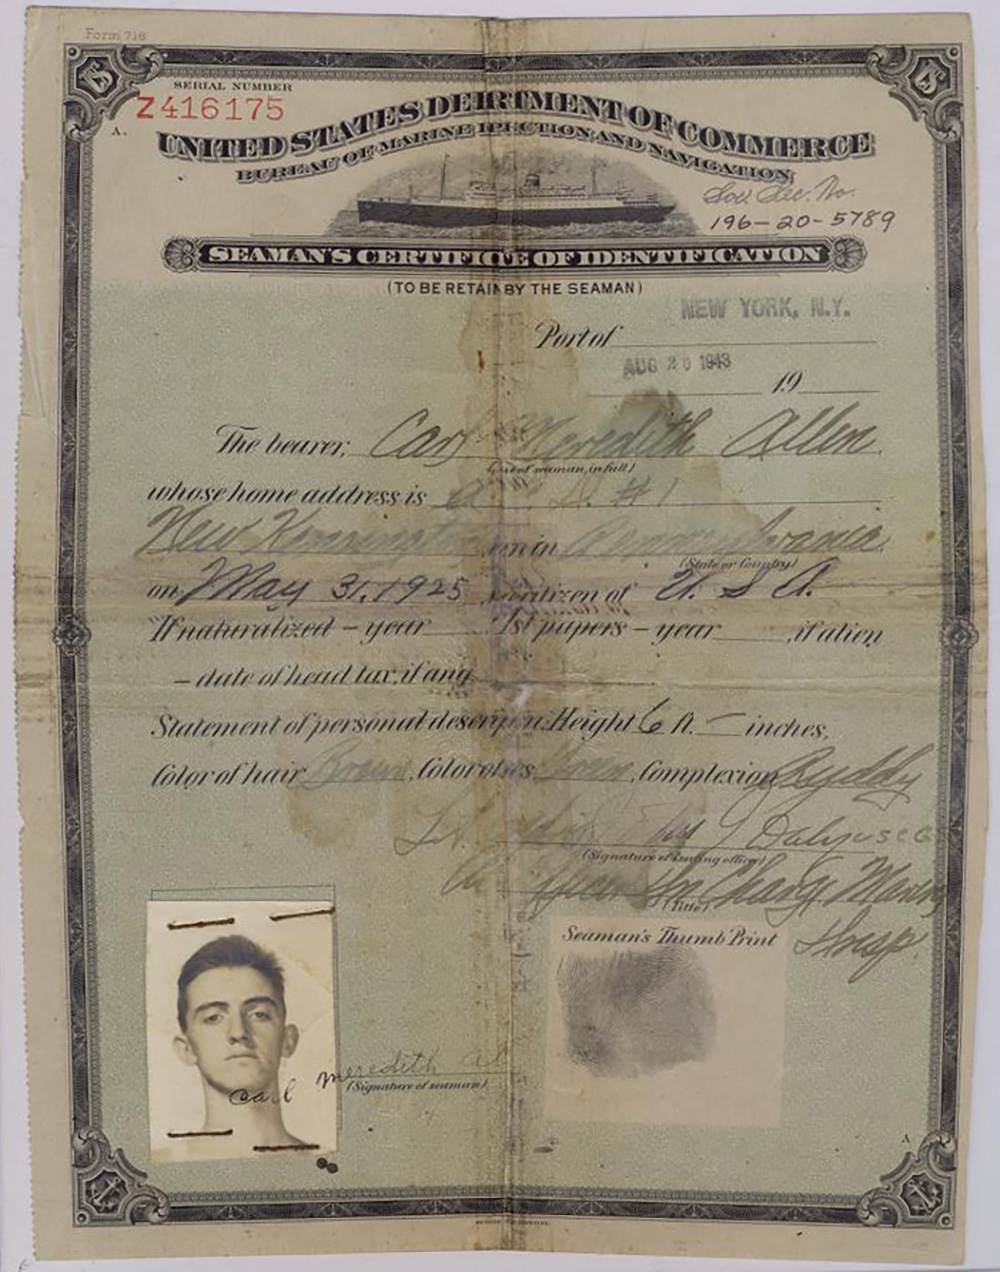 Carl Allen's Seaman's Certificate of Identification